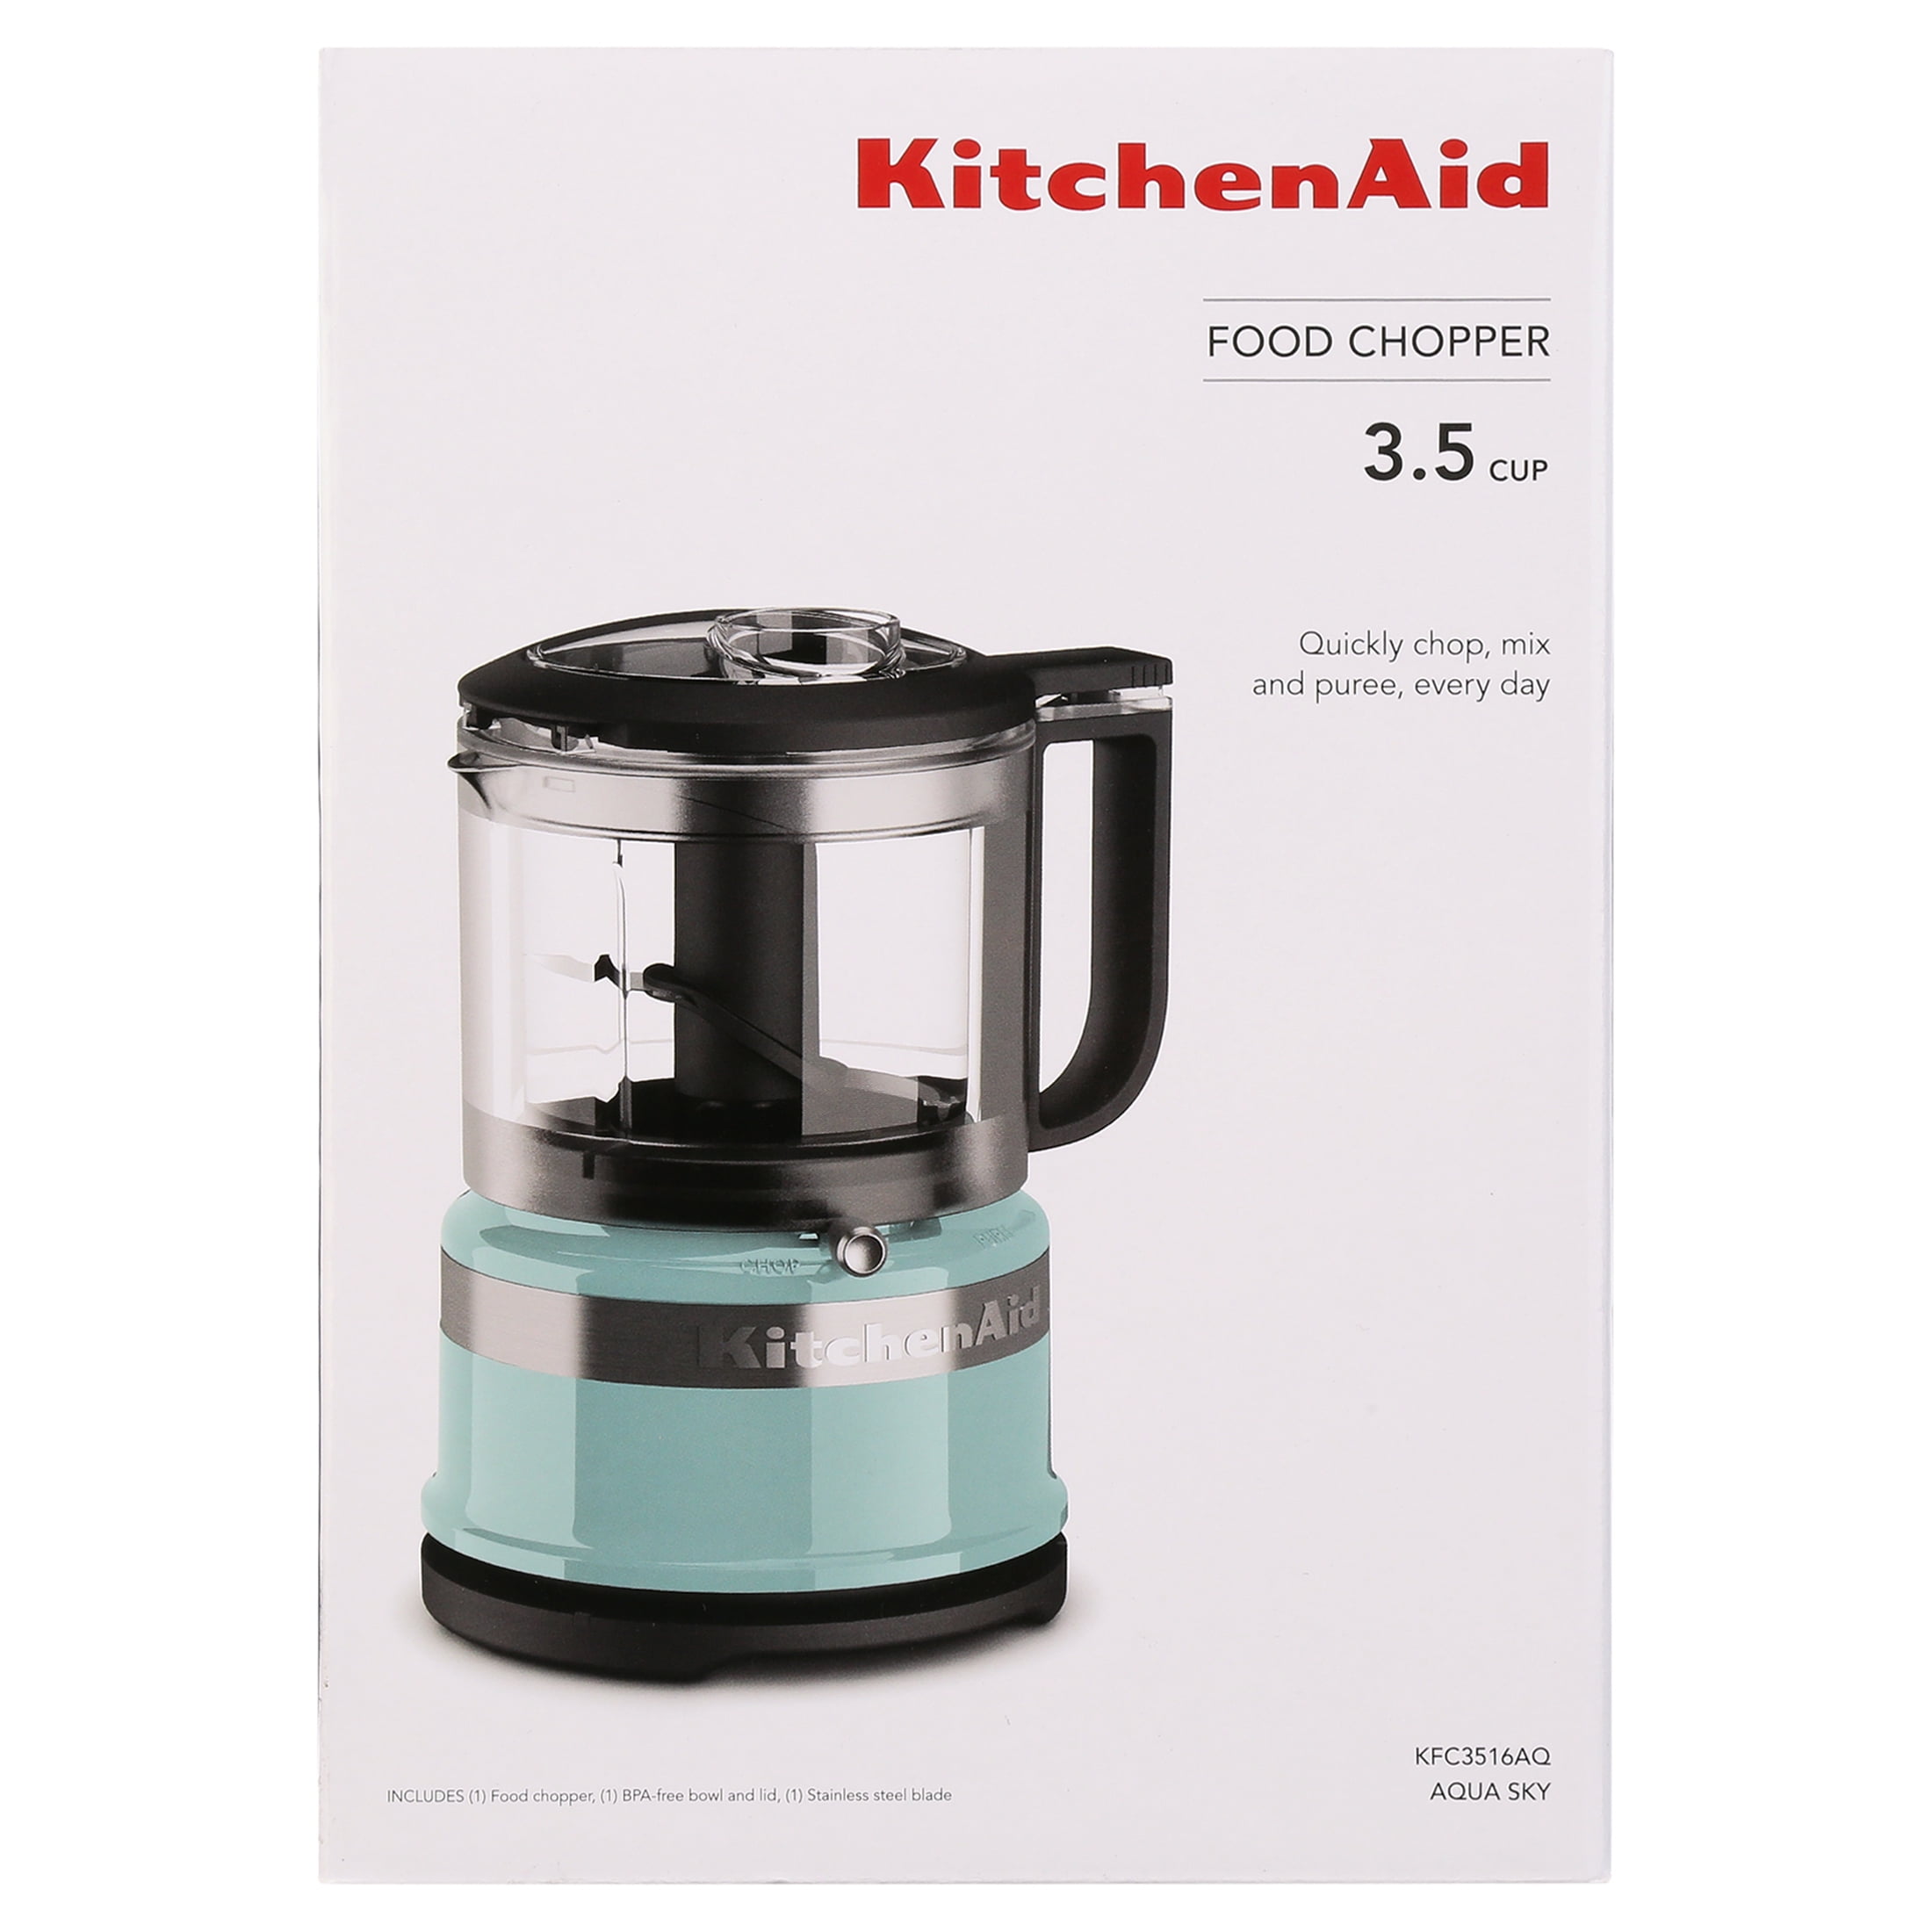 KitchenAid 3.5 Cup Food Chopper, Aqua Sky, KFC3516